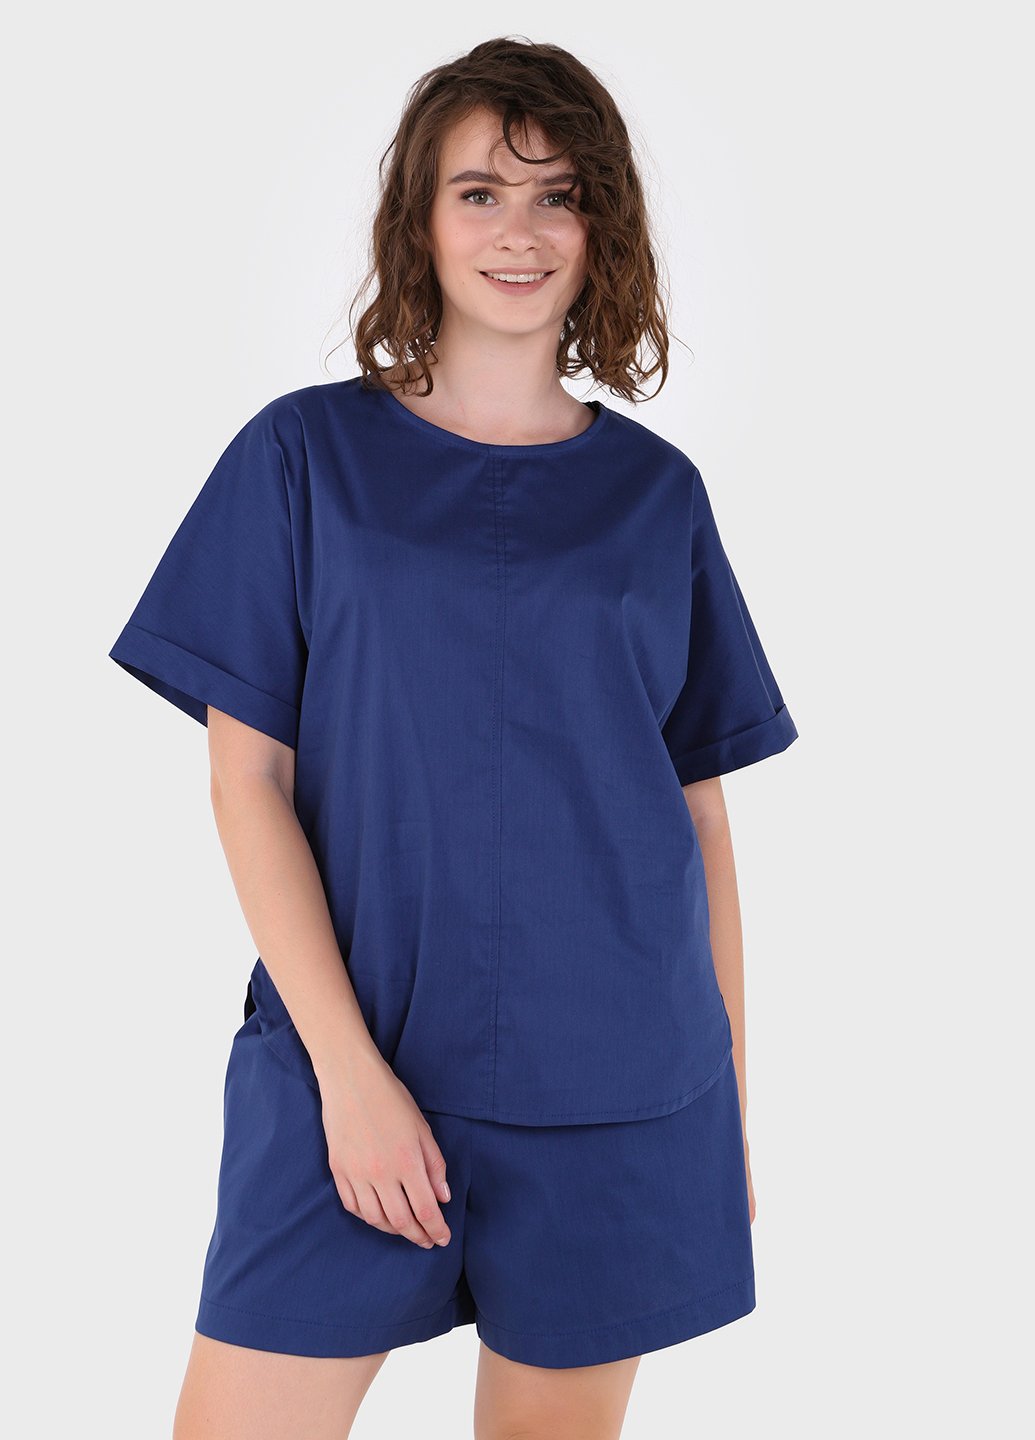 Купить Оверсайз хлопковая футболка женская синего цвета Merlini Ливорно 800000042, размер 42-44 в интернет-магазине